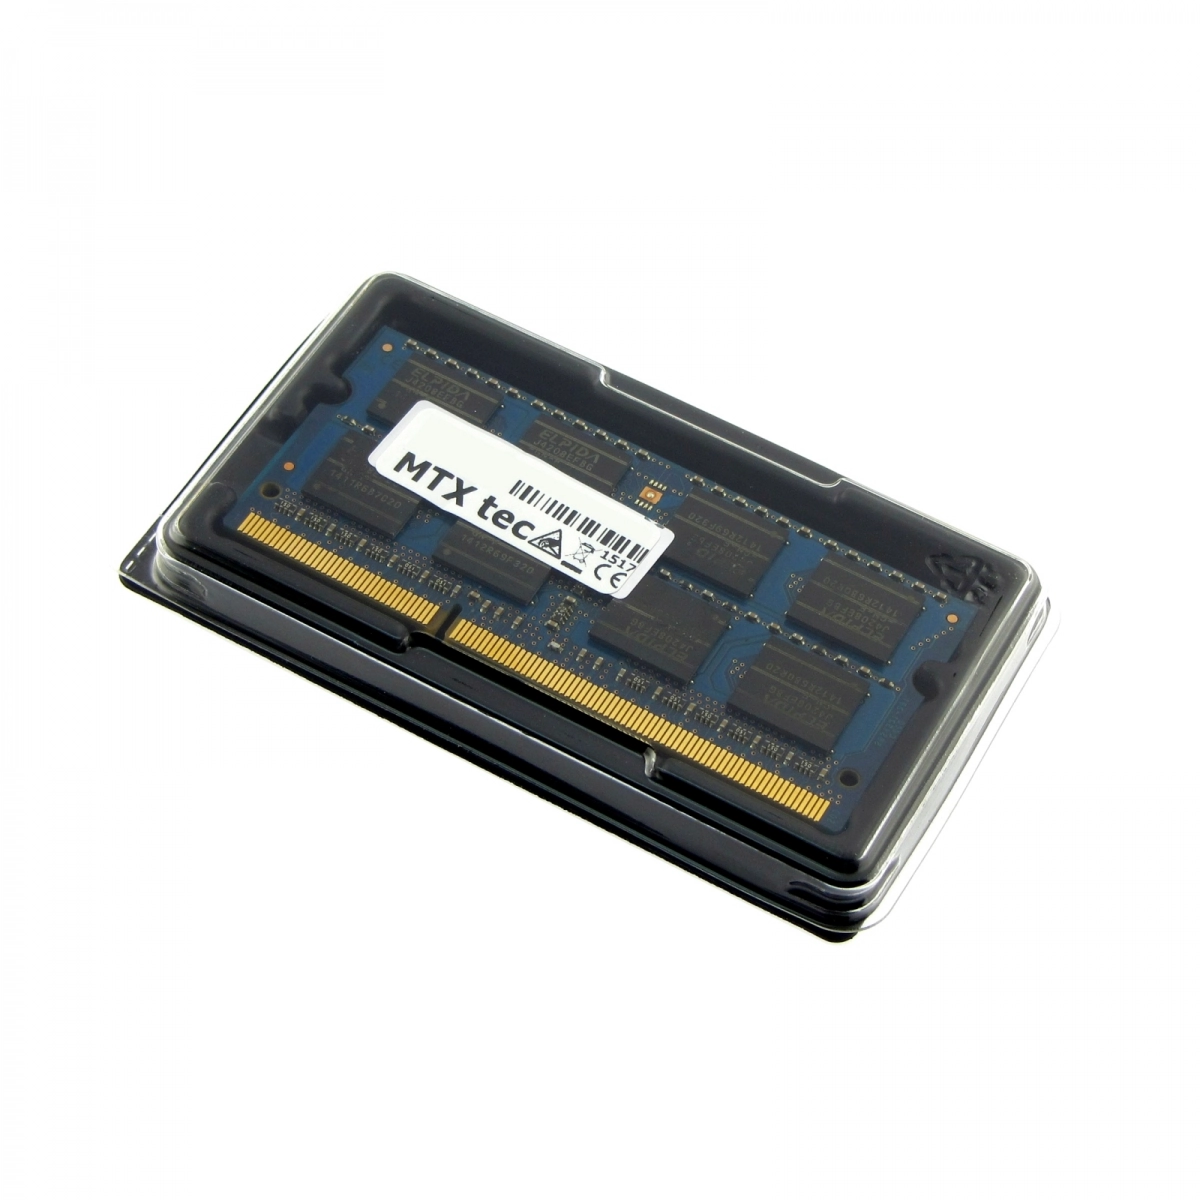 MTXtec Arbeitsspeicher 4 GB RAM für MSI CX620-i5-430M